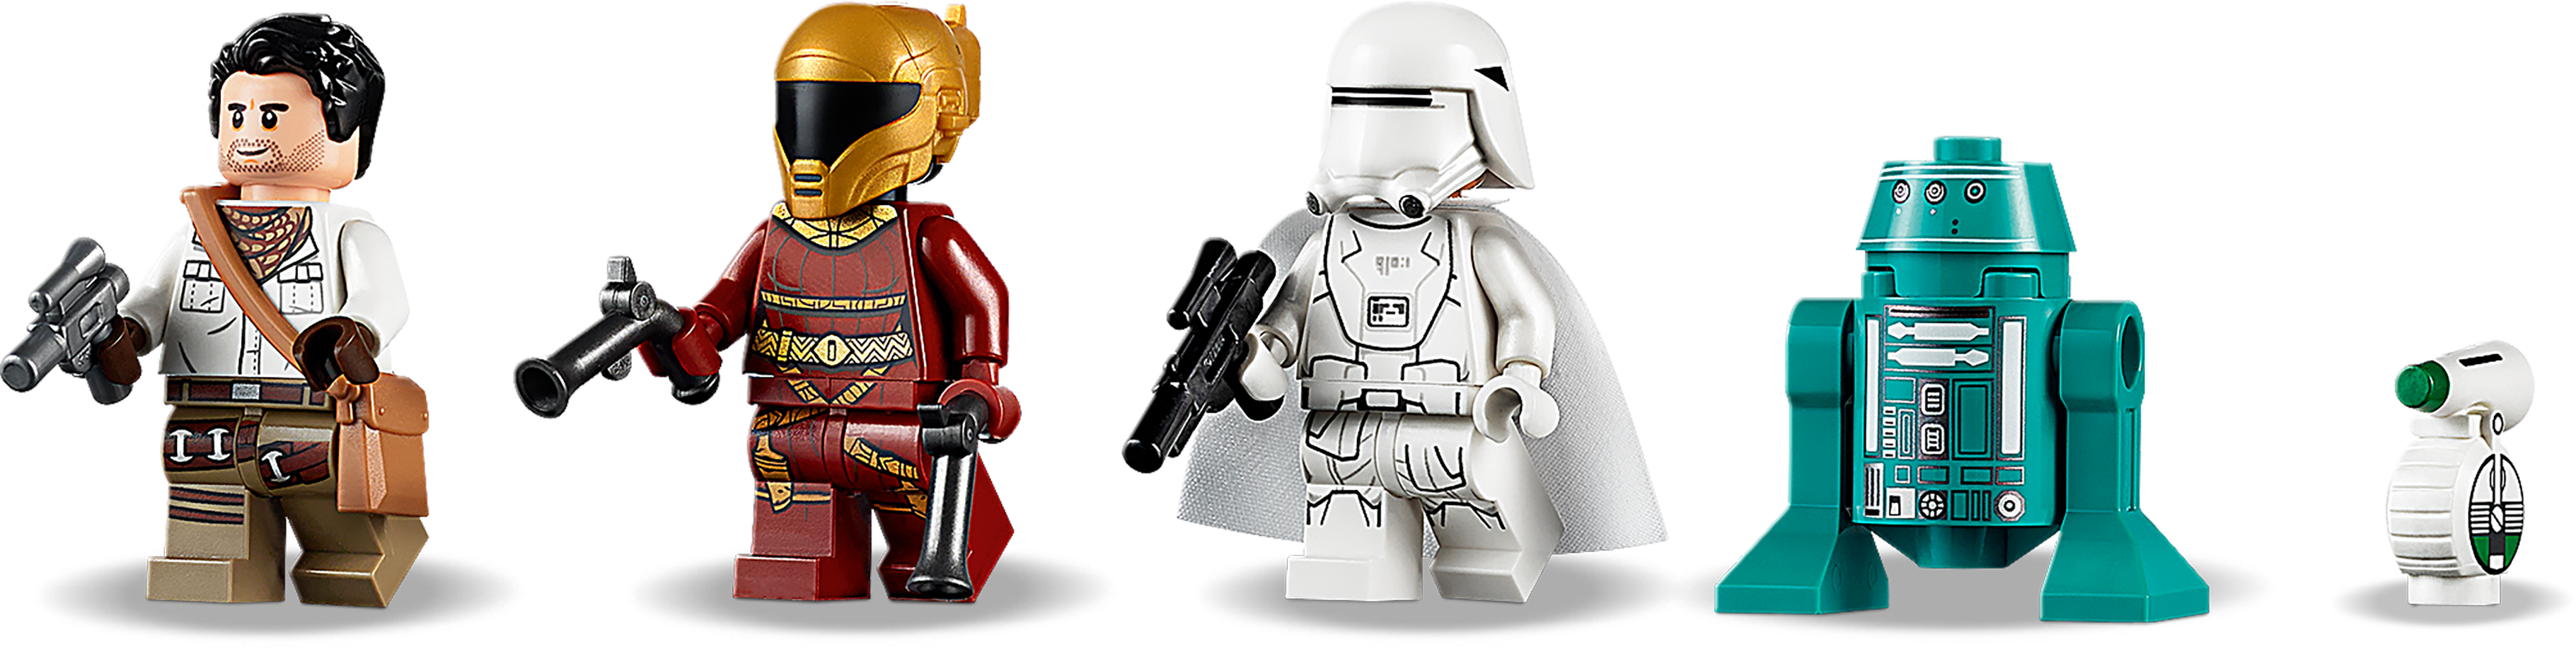 LEGO® 75249 STAR WARS Zorii Bliss mit 2 Blaster-Pistolen Minifigur Figur NEU 